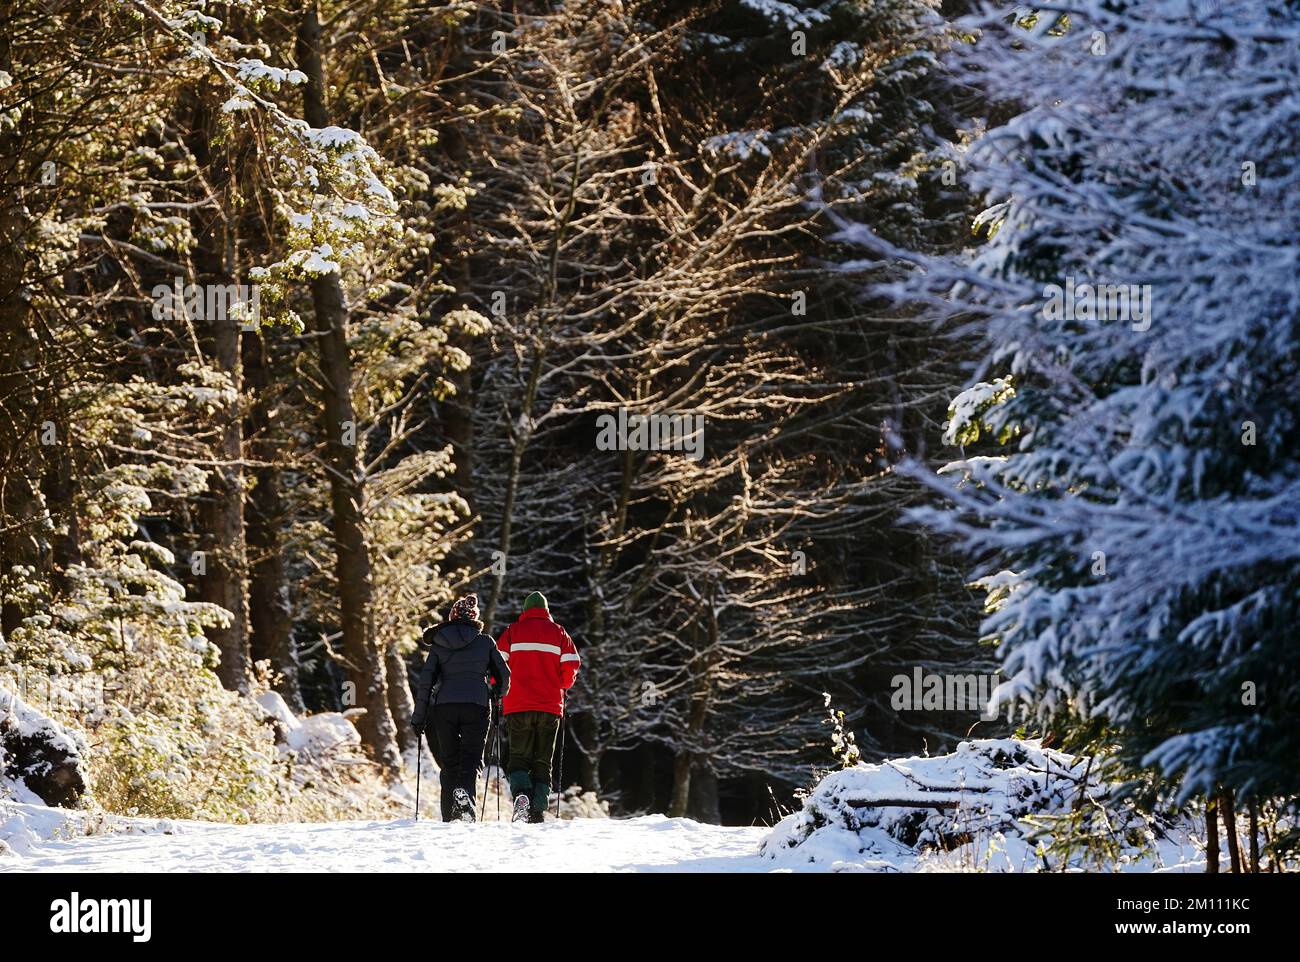 Die Leute laufen auf einem schneebedeckten Pfad im Ticknock-Wald, Dublin. Teile Irlands wurden mit Schnee überdeckt, und die Wetterbeobachter warnten, dass die Frostbedingungen anhalten werden. Foto: Freitag, 9. Dezember 2022. Stockfoto